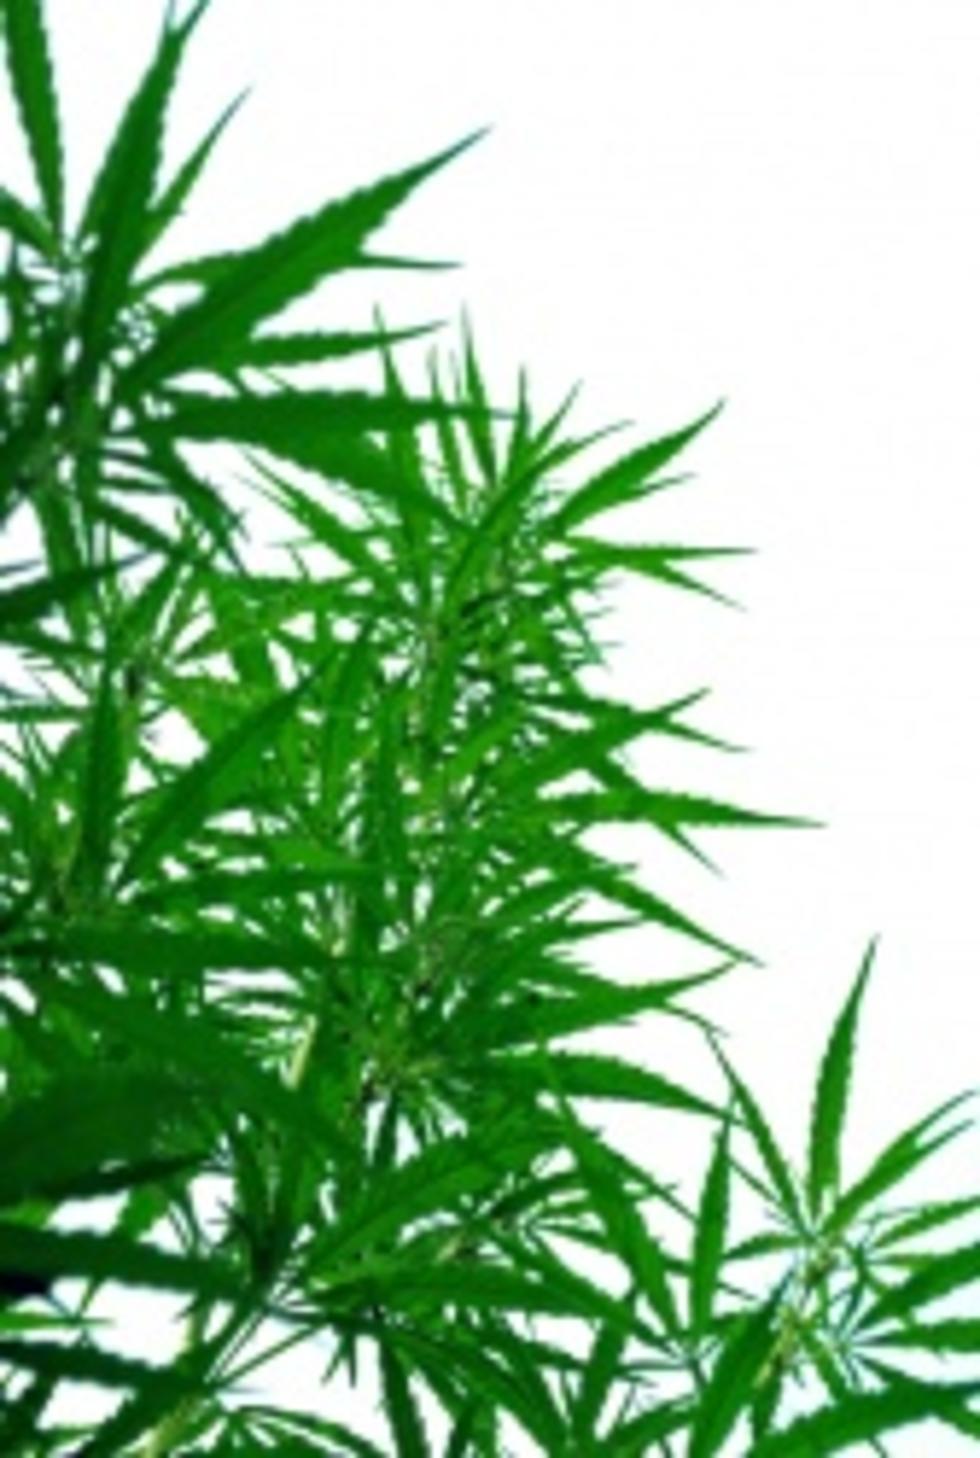 Marijuana Oil May be Legal in Idaho